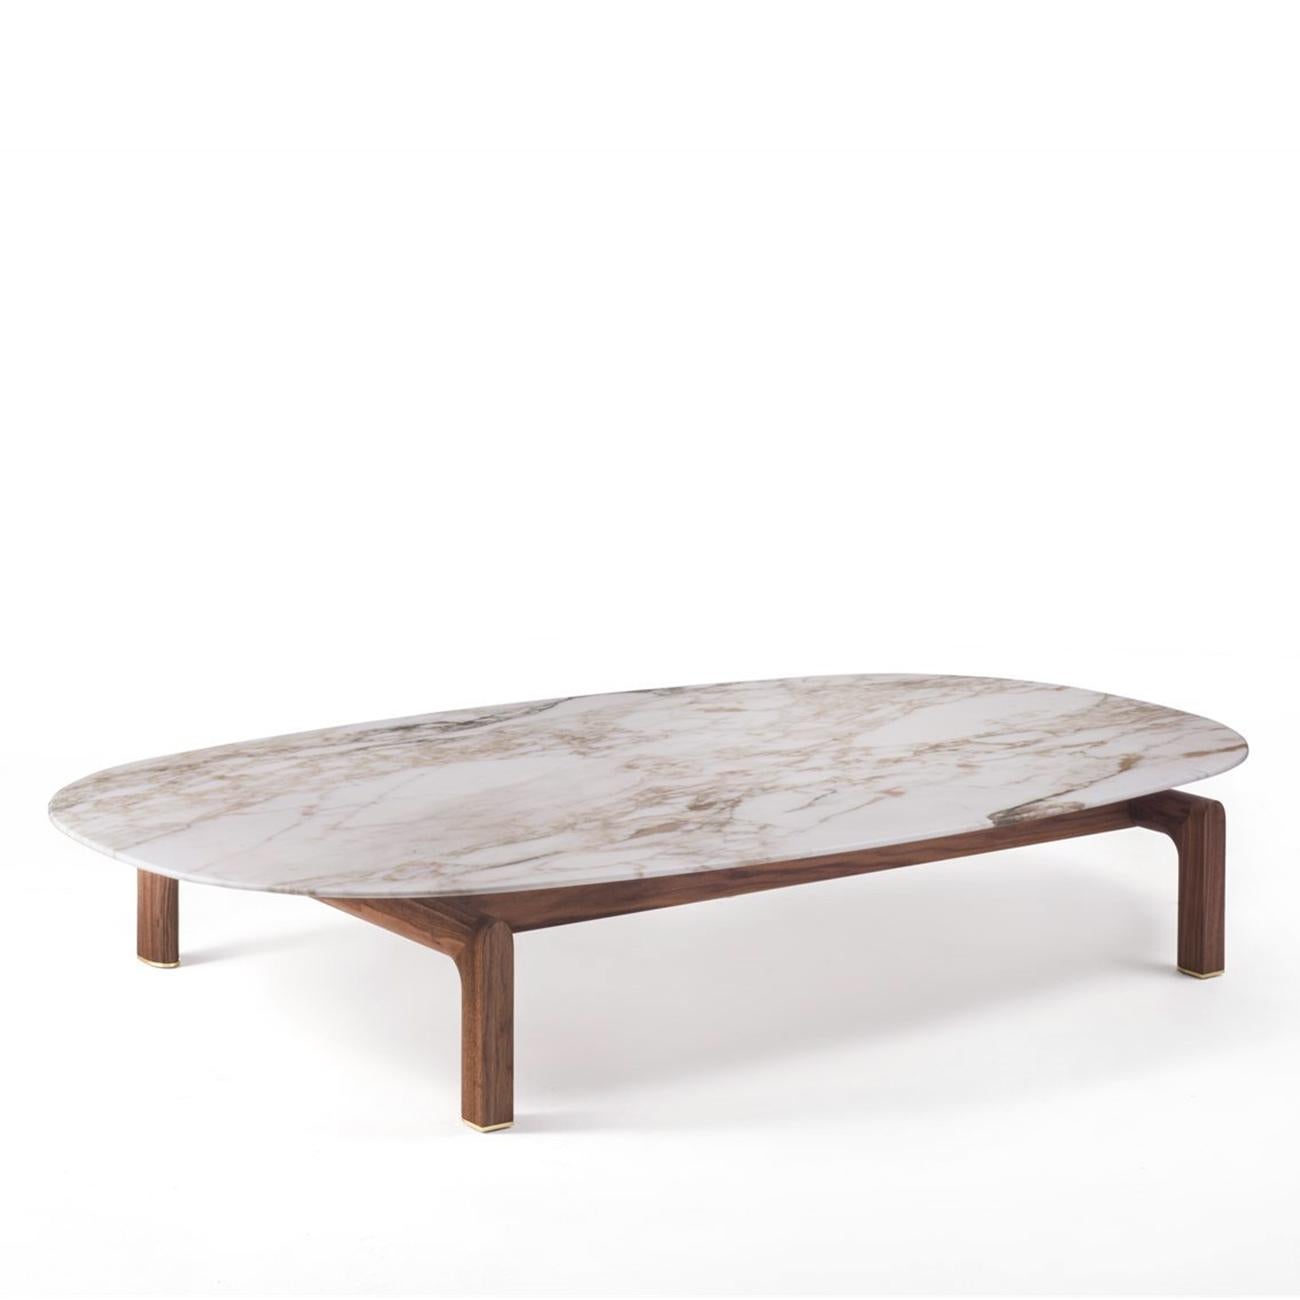 Table basse White Night avec base en noyer massif 
en bois et avec un plateau en marbre blanc calacatta poli.